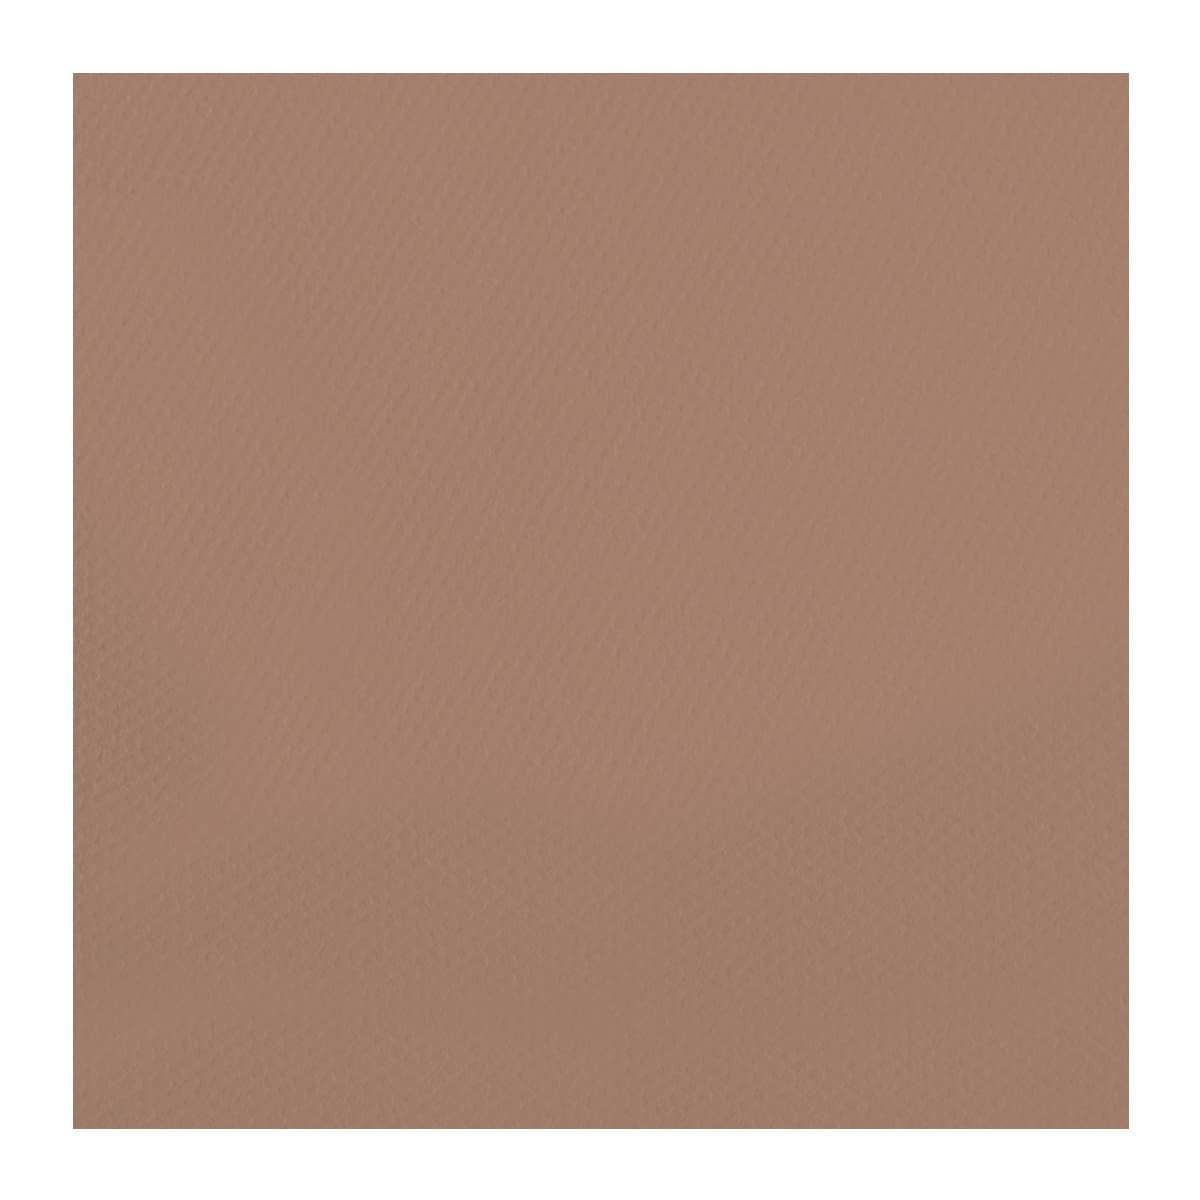 Chestnut Brown #188 Canson Mi-Teintes Paper 10pk 19x25 in  